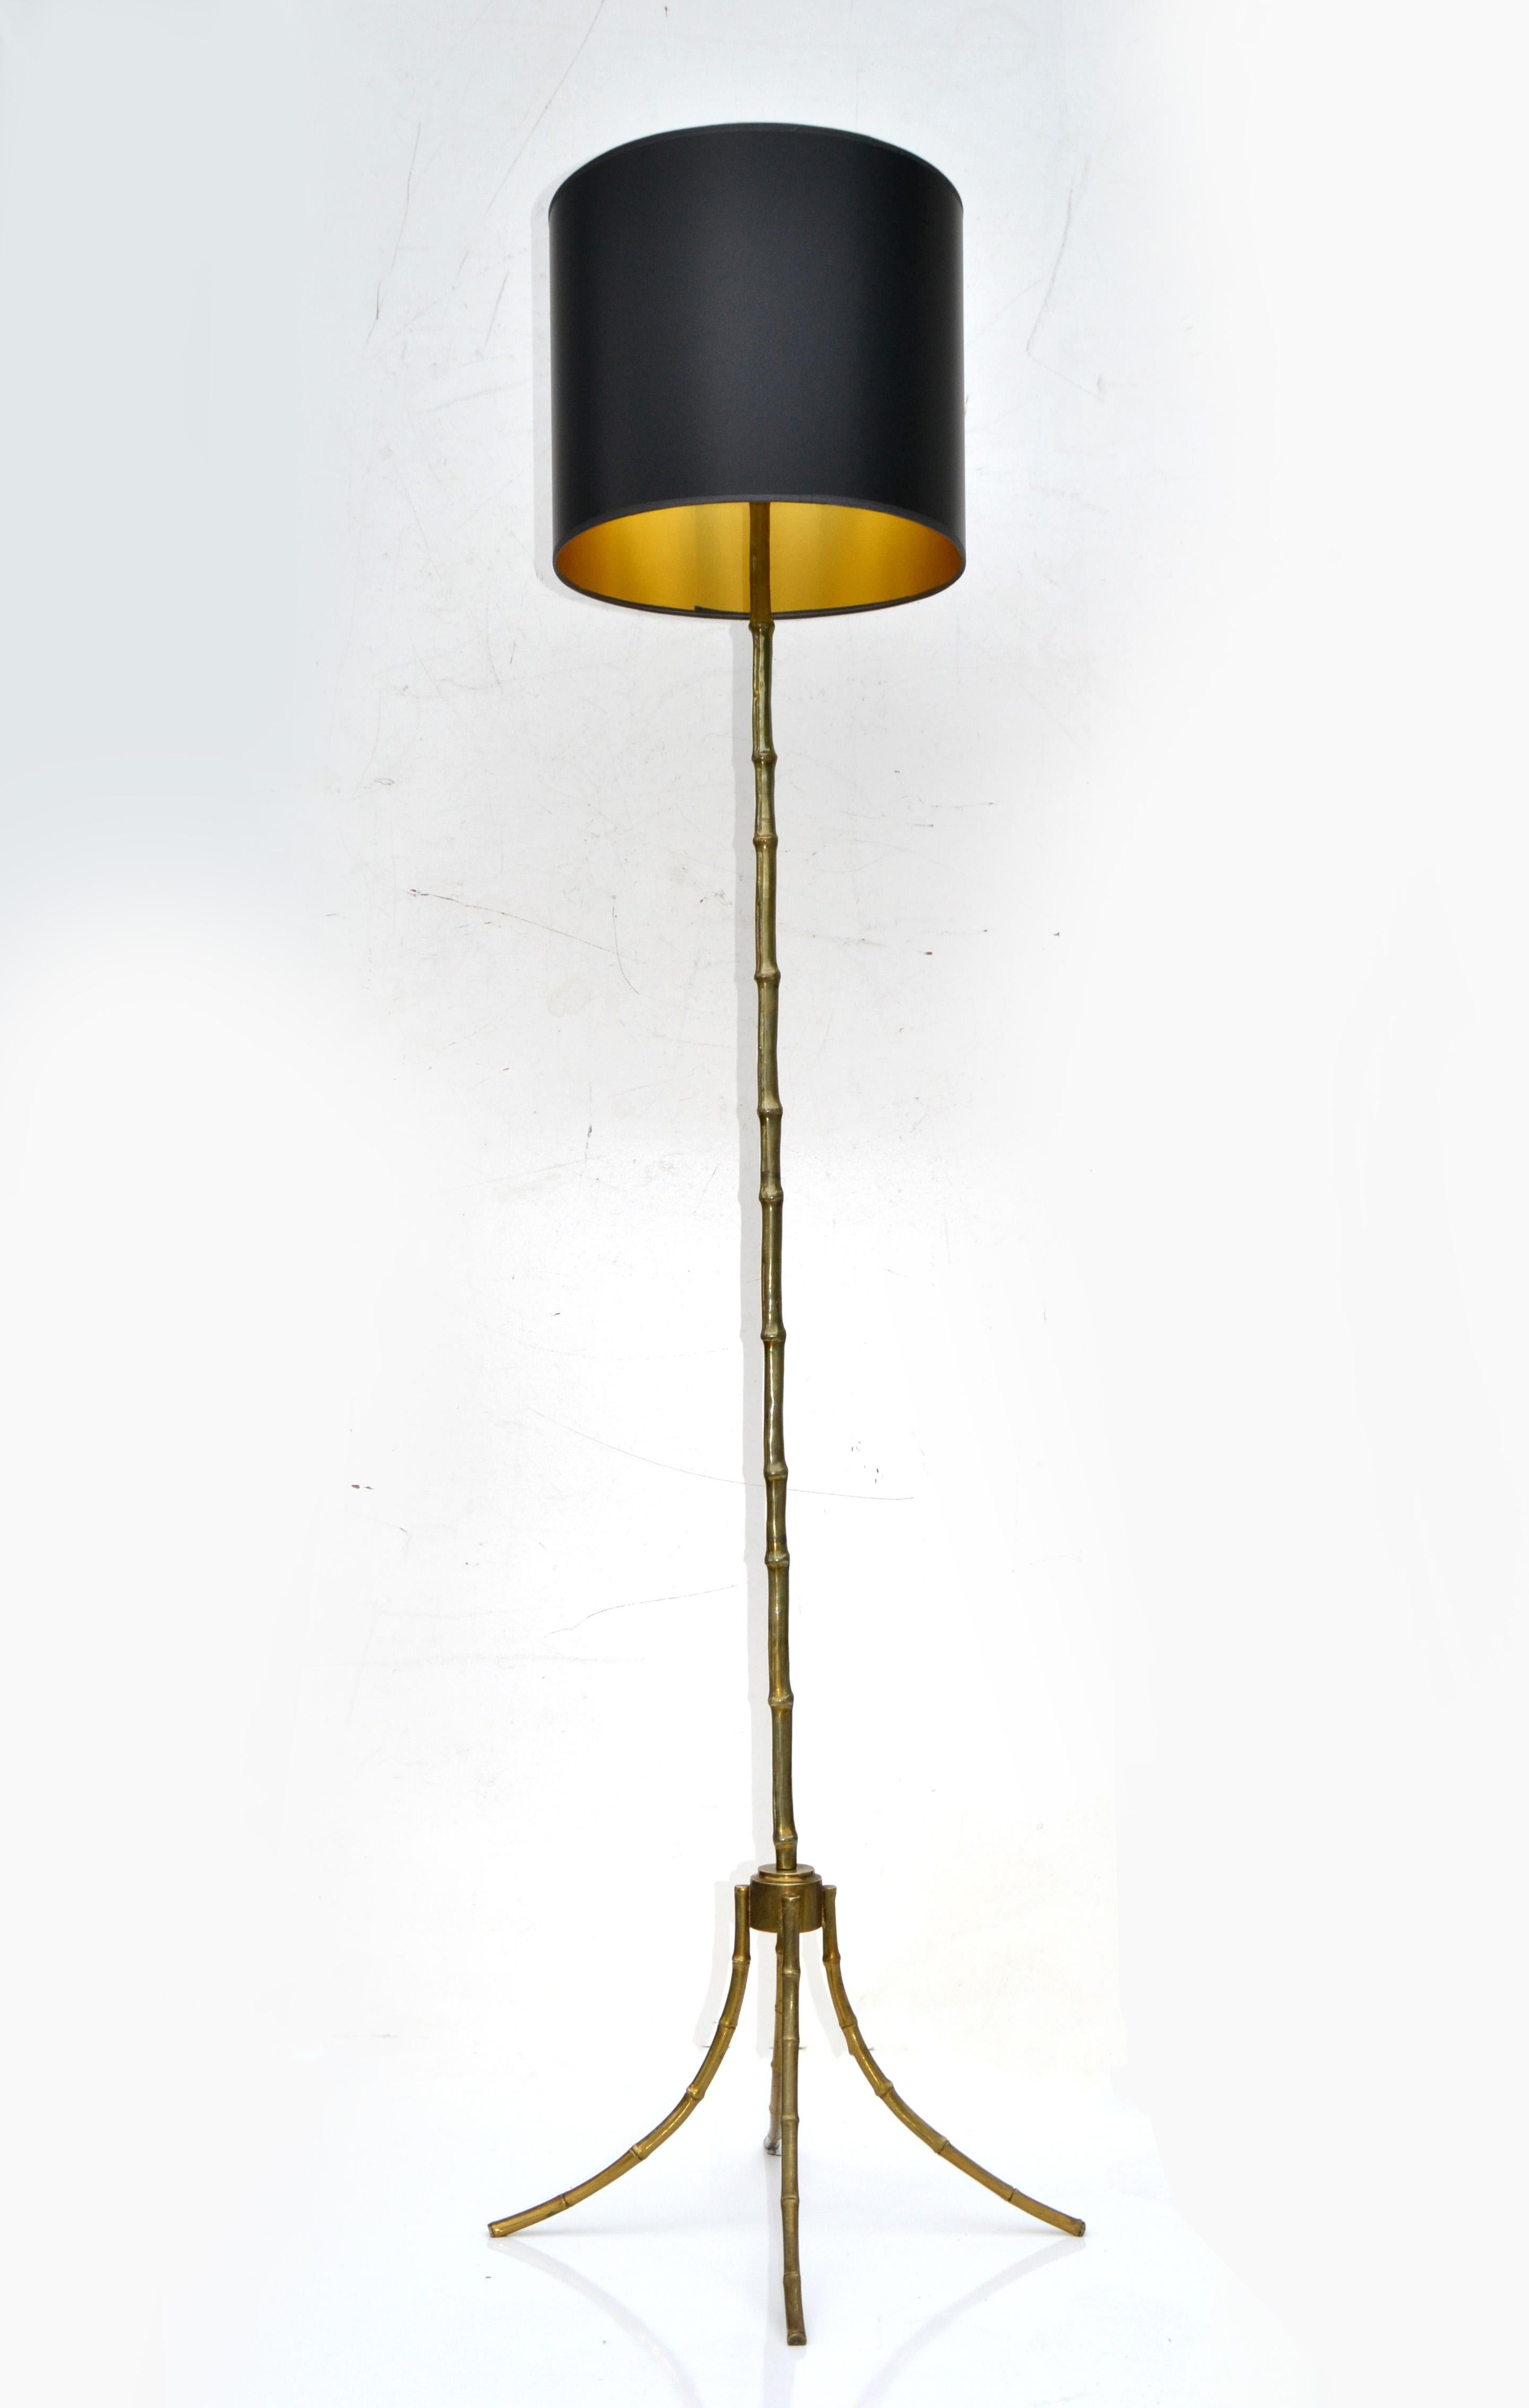 Stehleuchte von Maison Bagus aus massiver Bronze und Kunstbambus, sehr schwer, hochwertig.
Neoklassizistische Lampe aus dem Jahr 1950, hergestellt in Frankreich.
US-US-verkabelt, funktionstüchtiger Zustand, jede Lampe benötigt eine Fassung mit